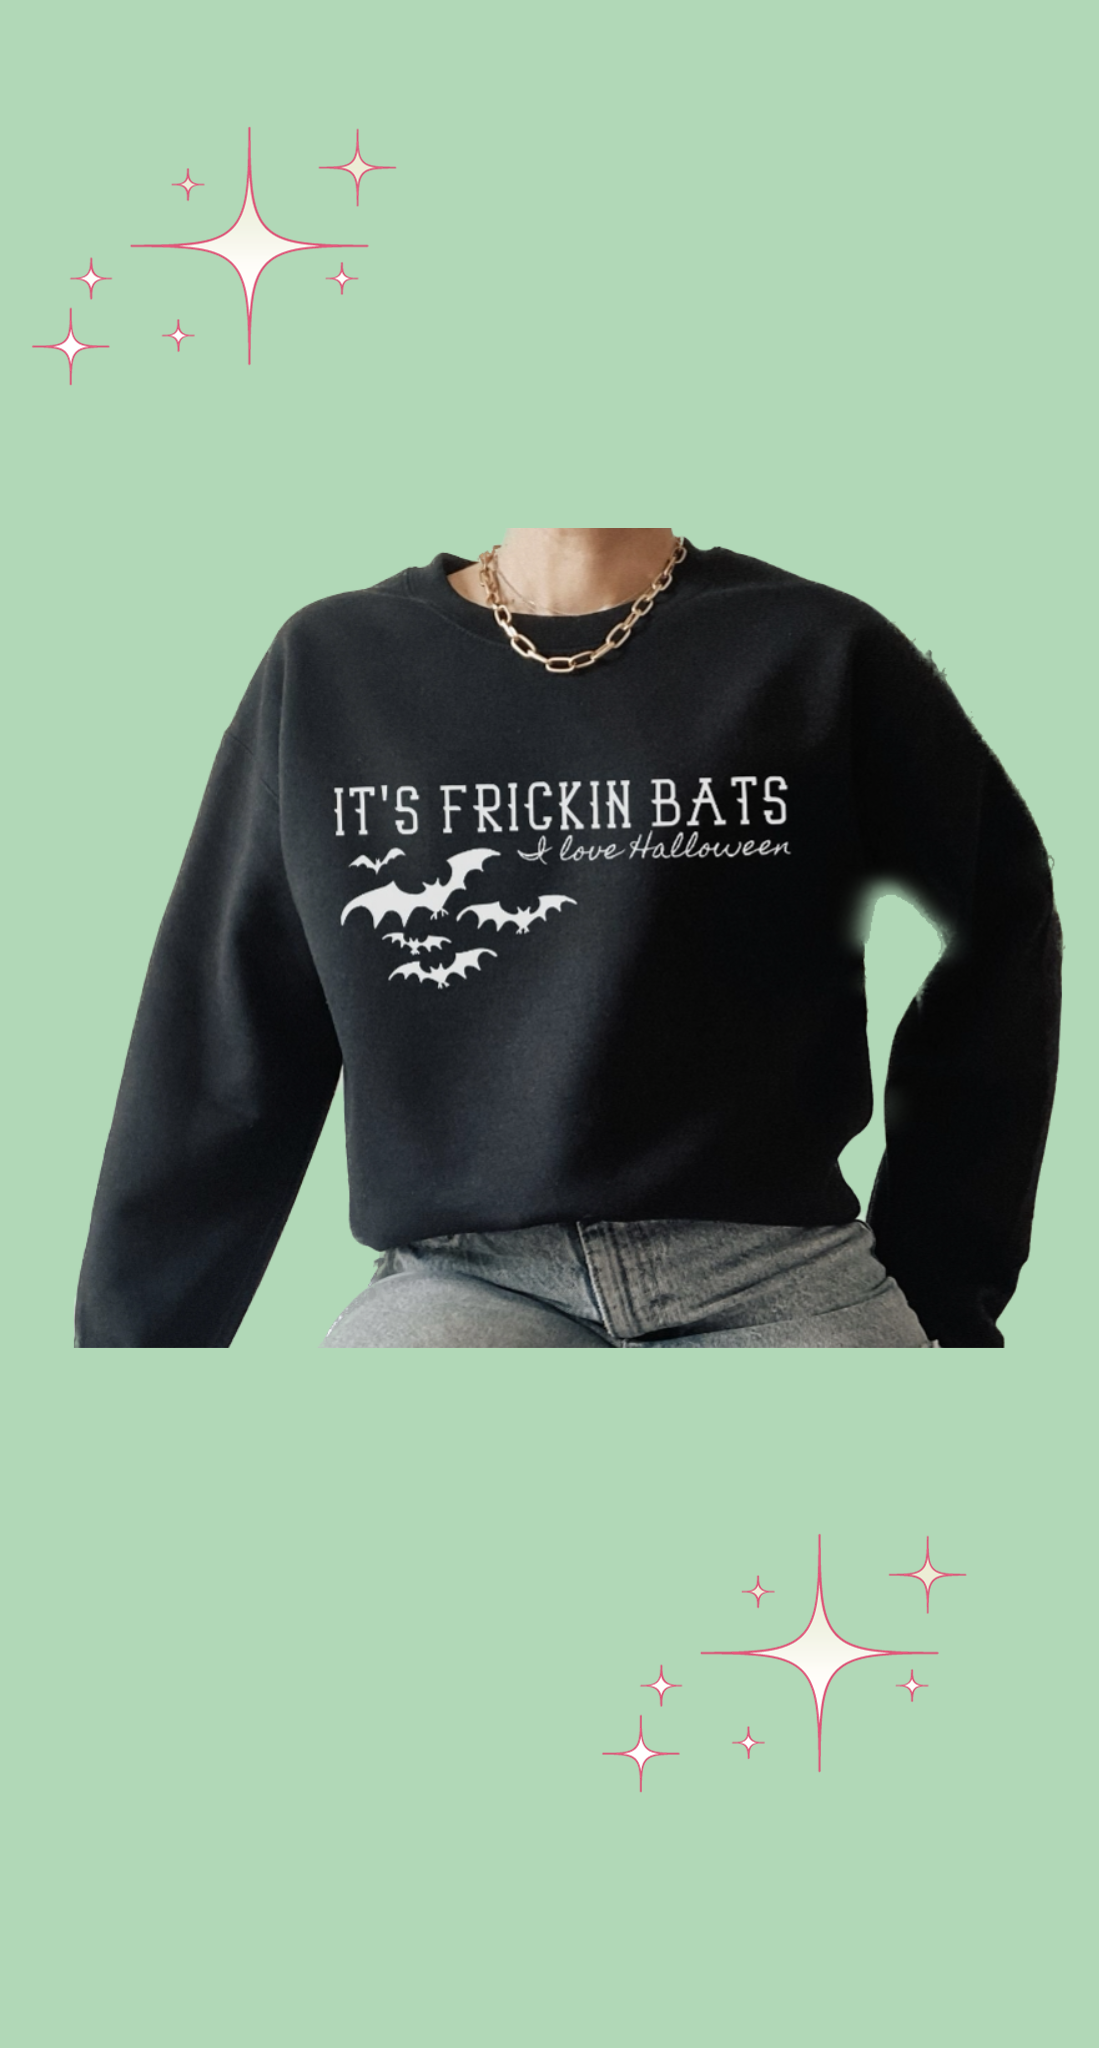 It’s freakin bats hoodie